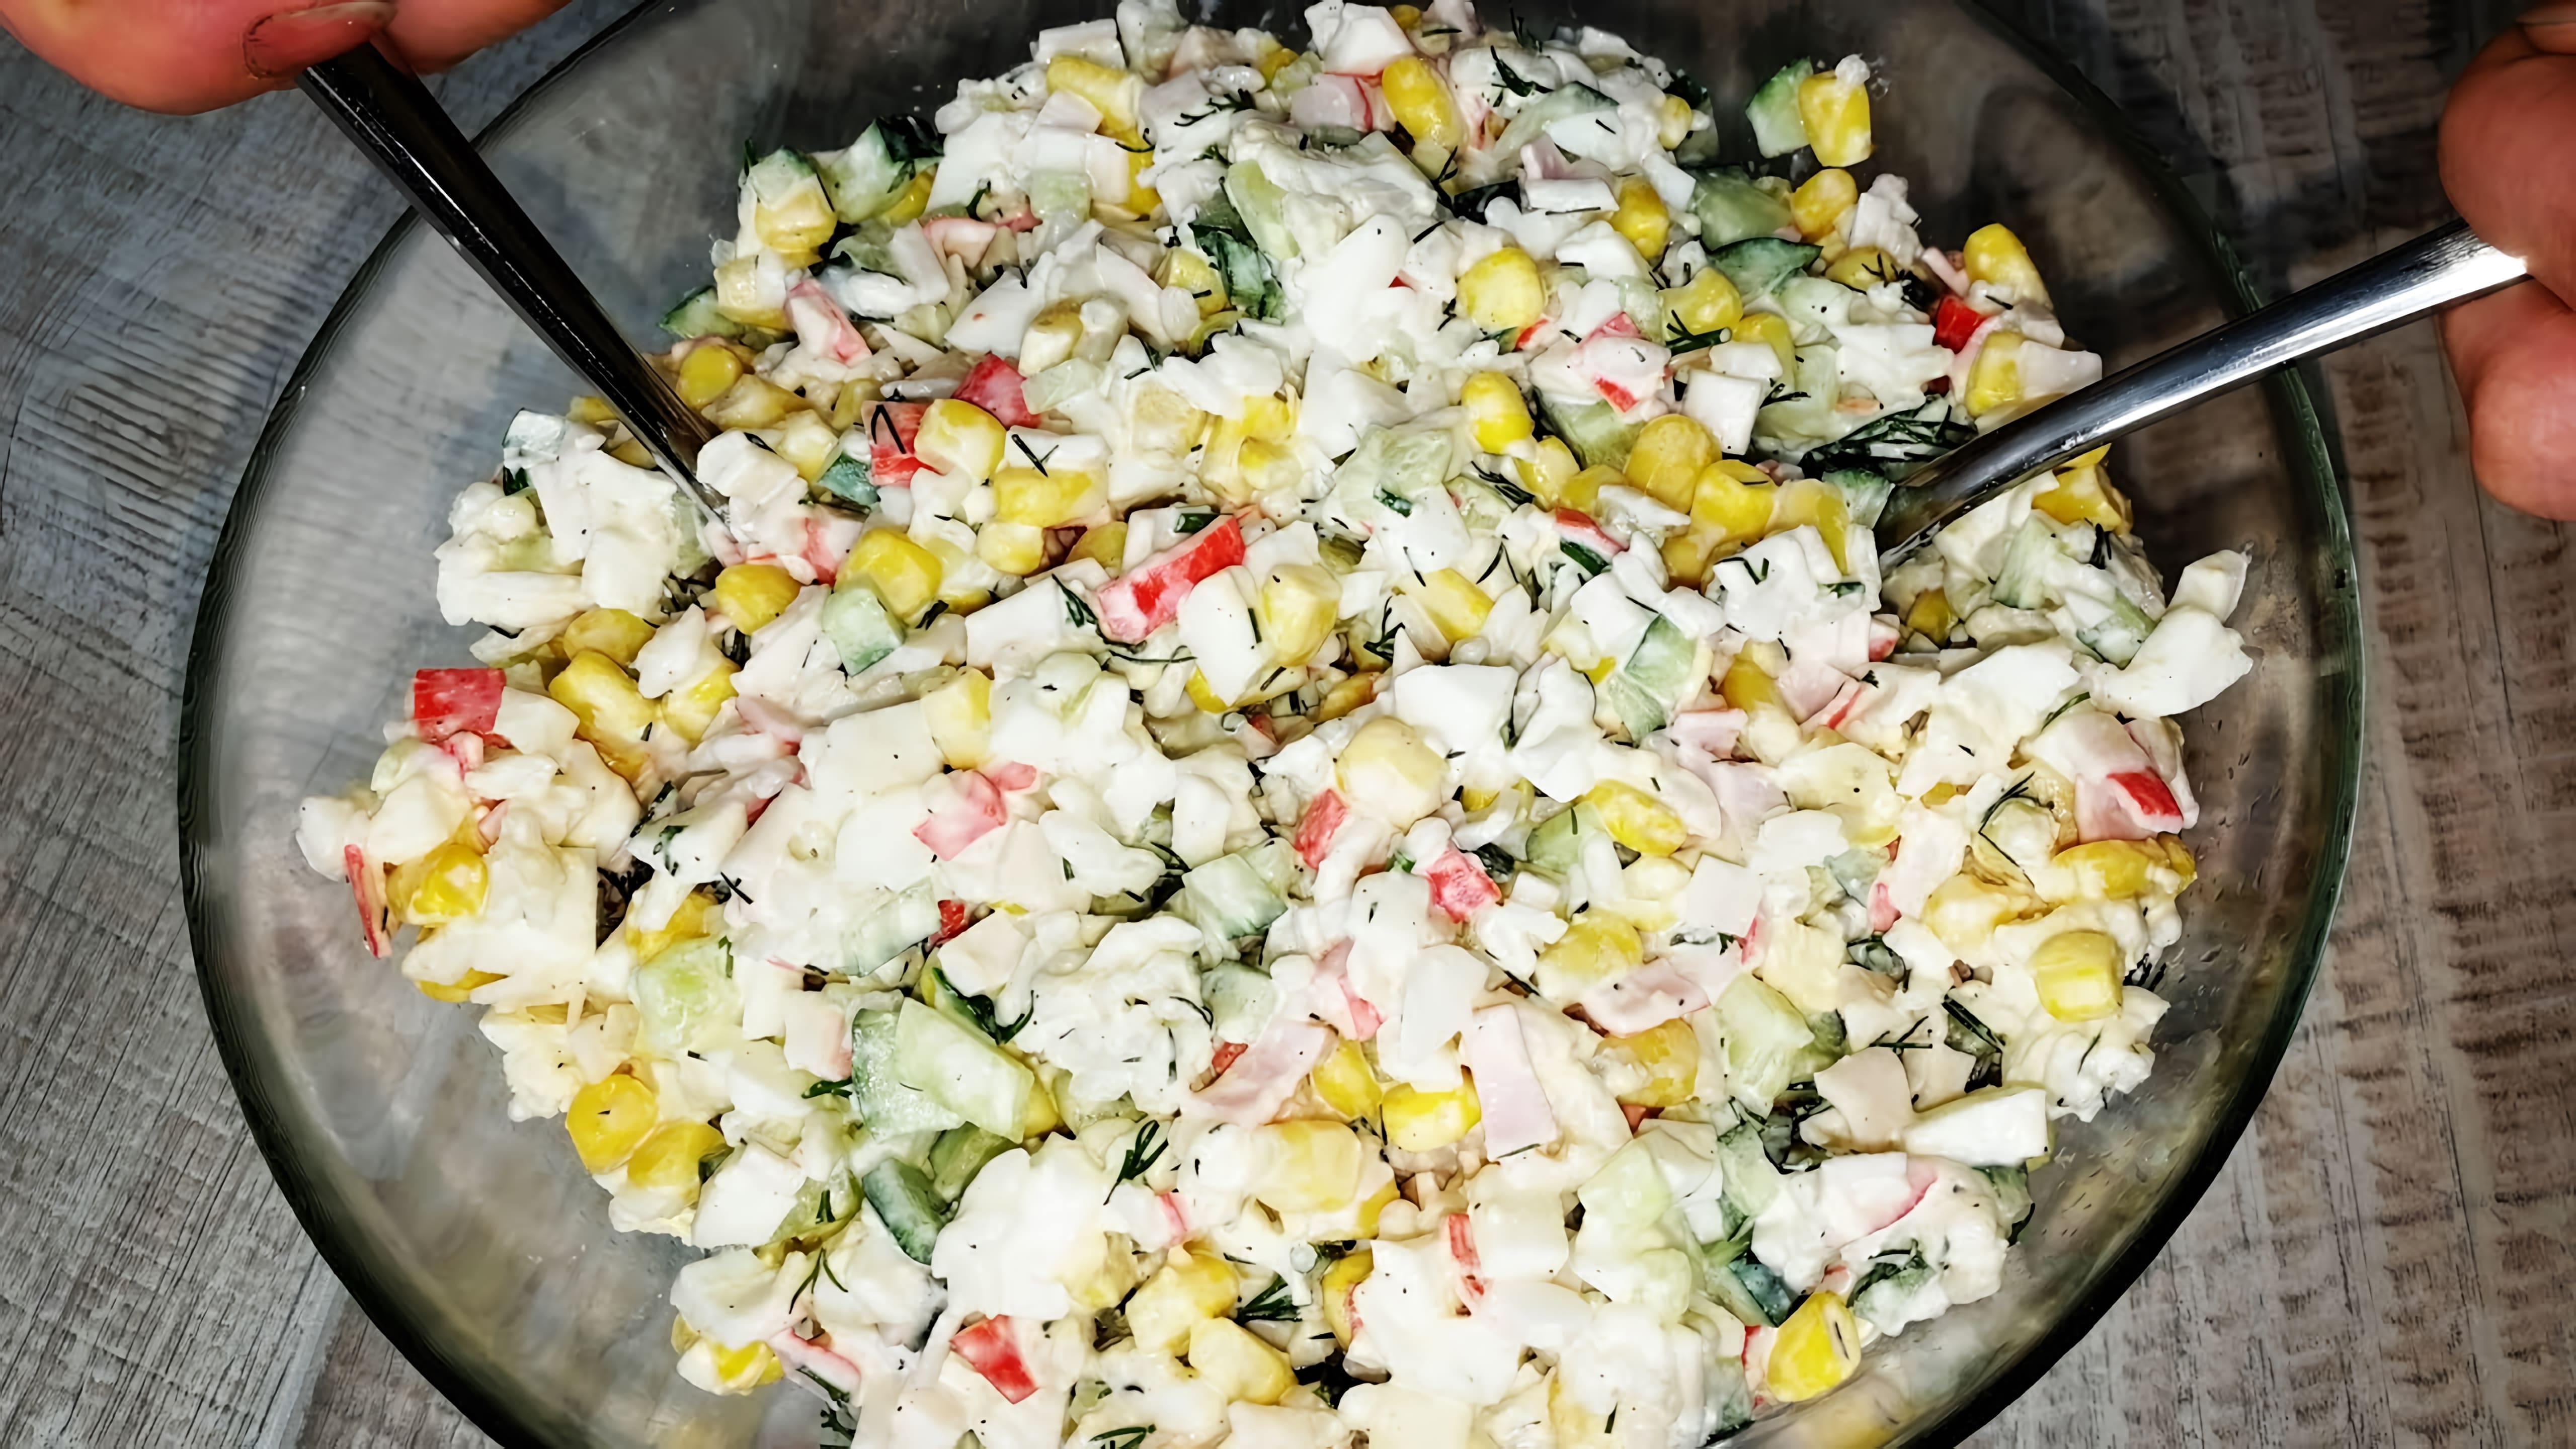 "Самый быстрый и вкусный салат из крабовых палочек" - это видео-ролик, который демонстрирует процесс приготовления быстрого и вкусного салата из крабовых палочек